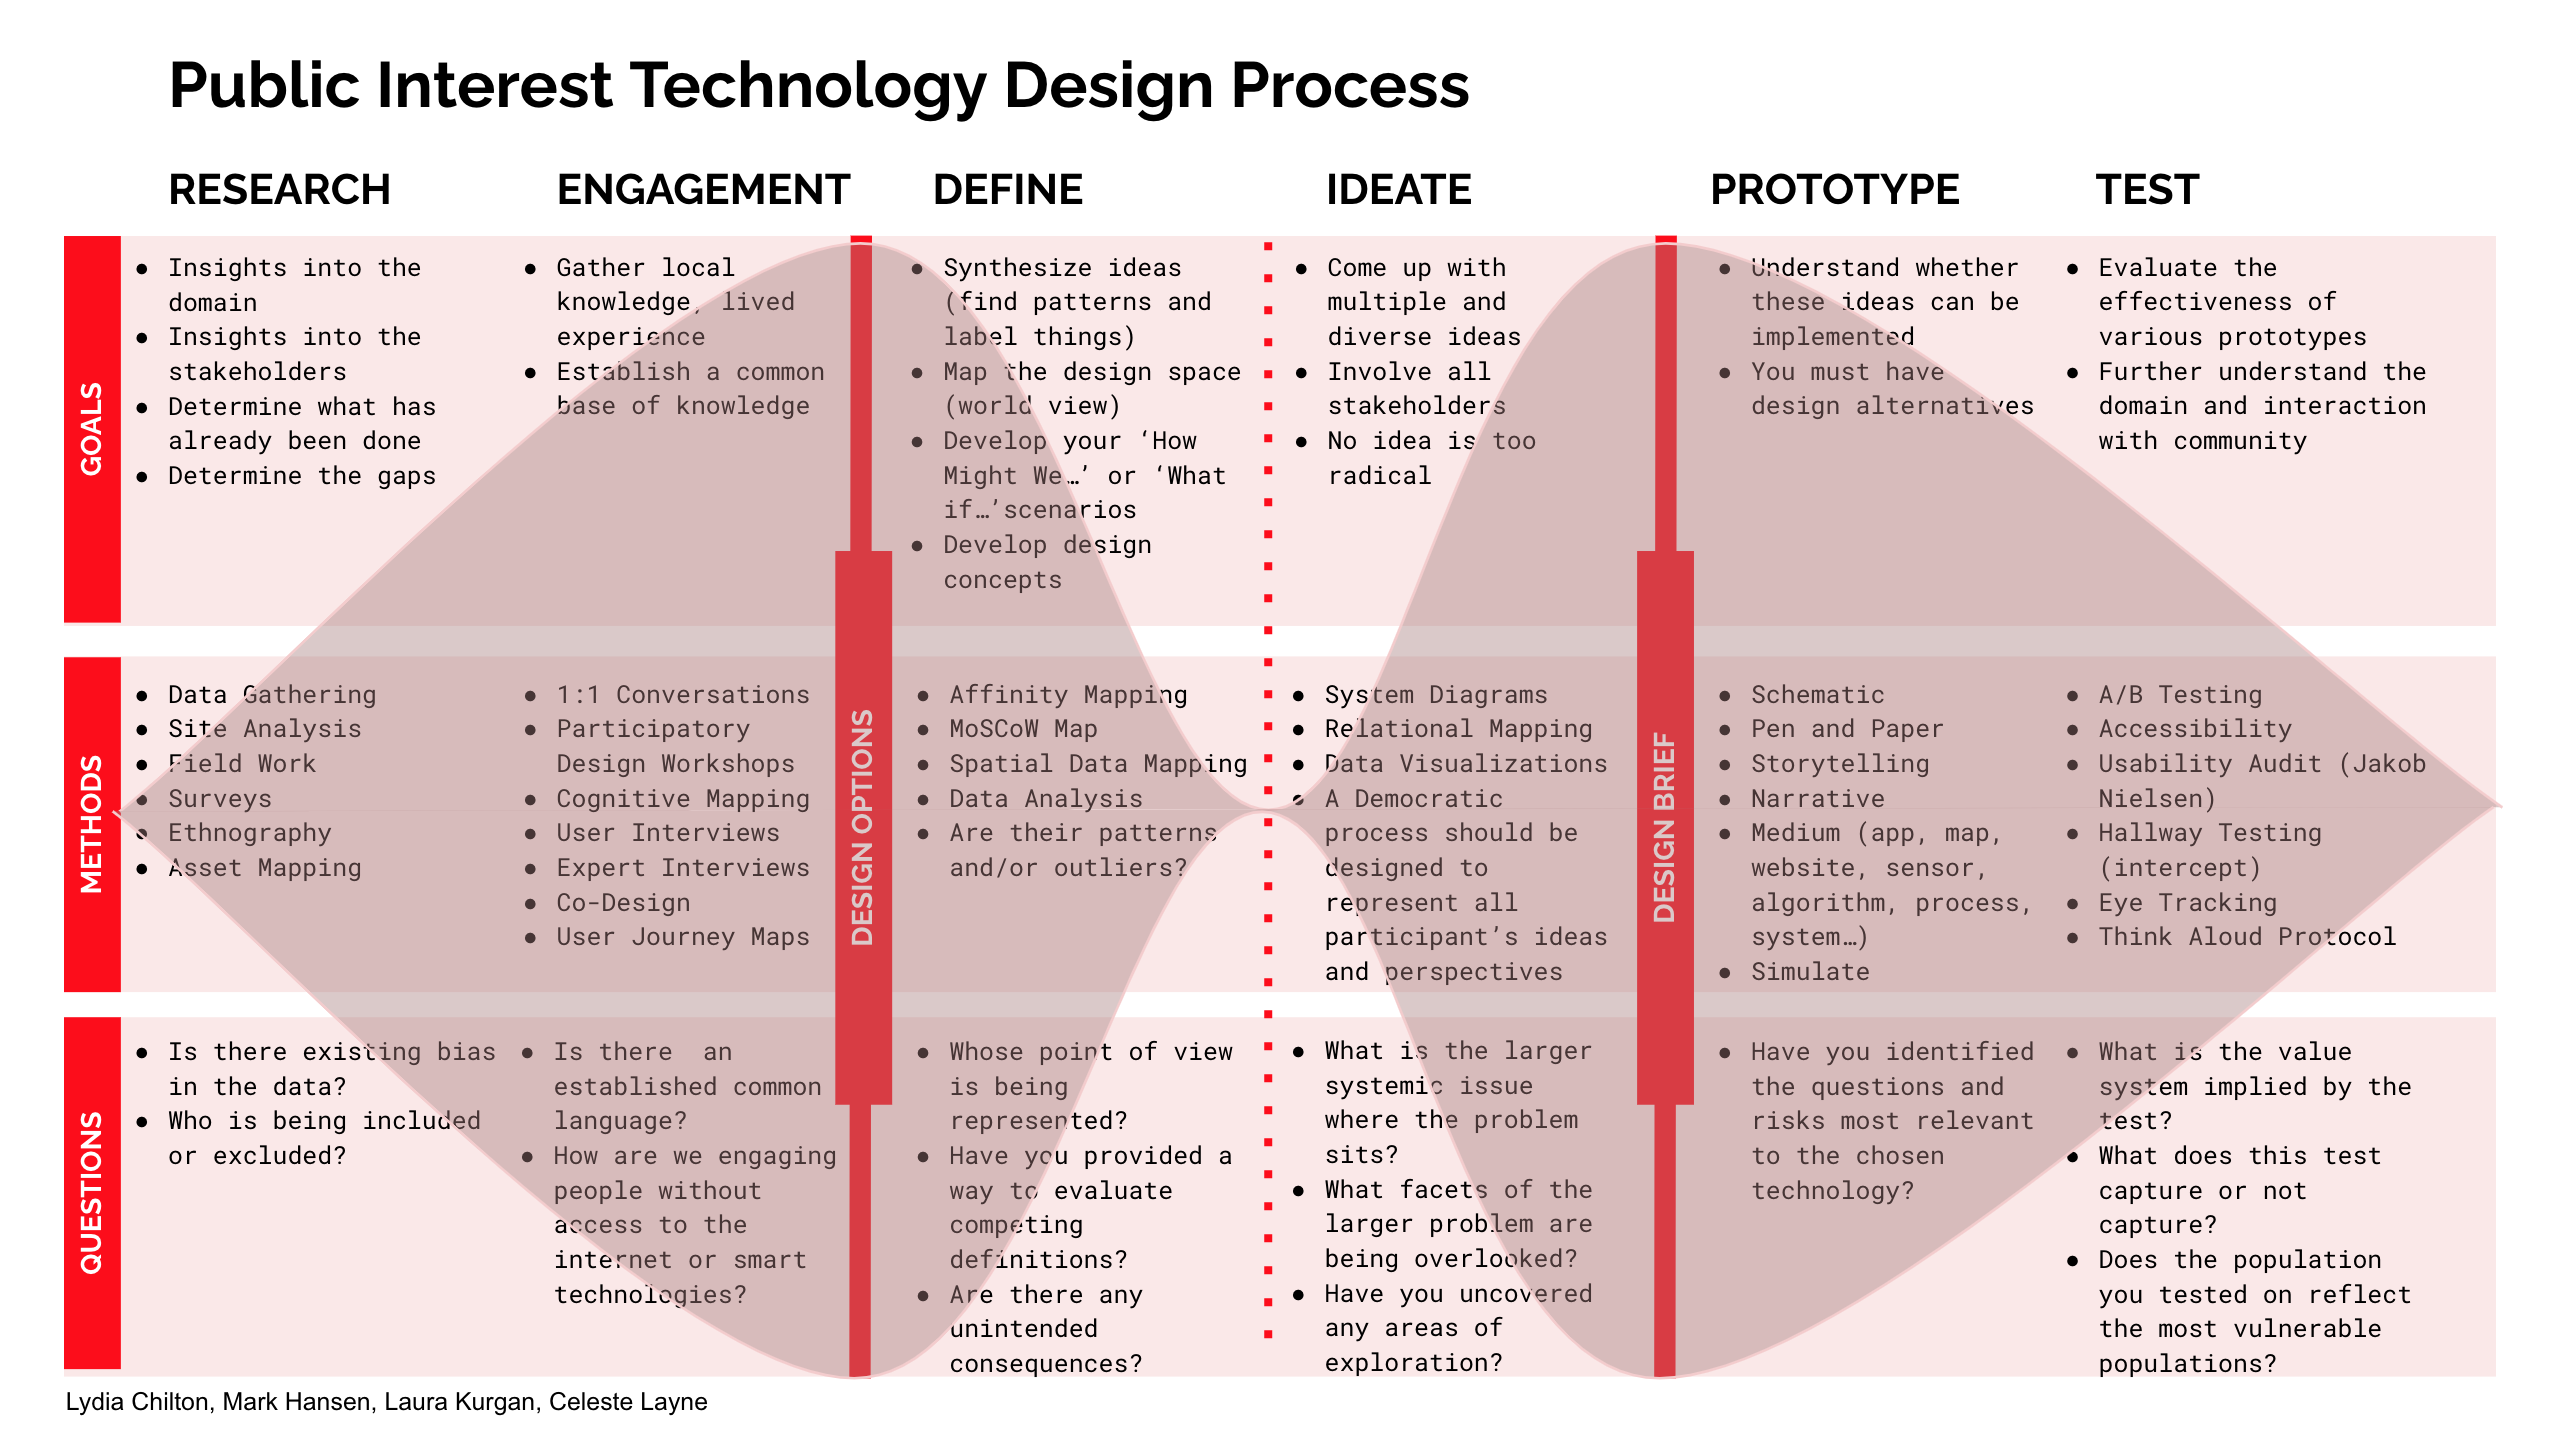 PIT Design Process